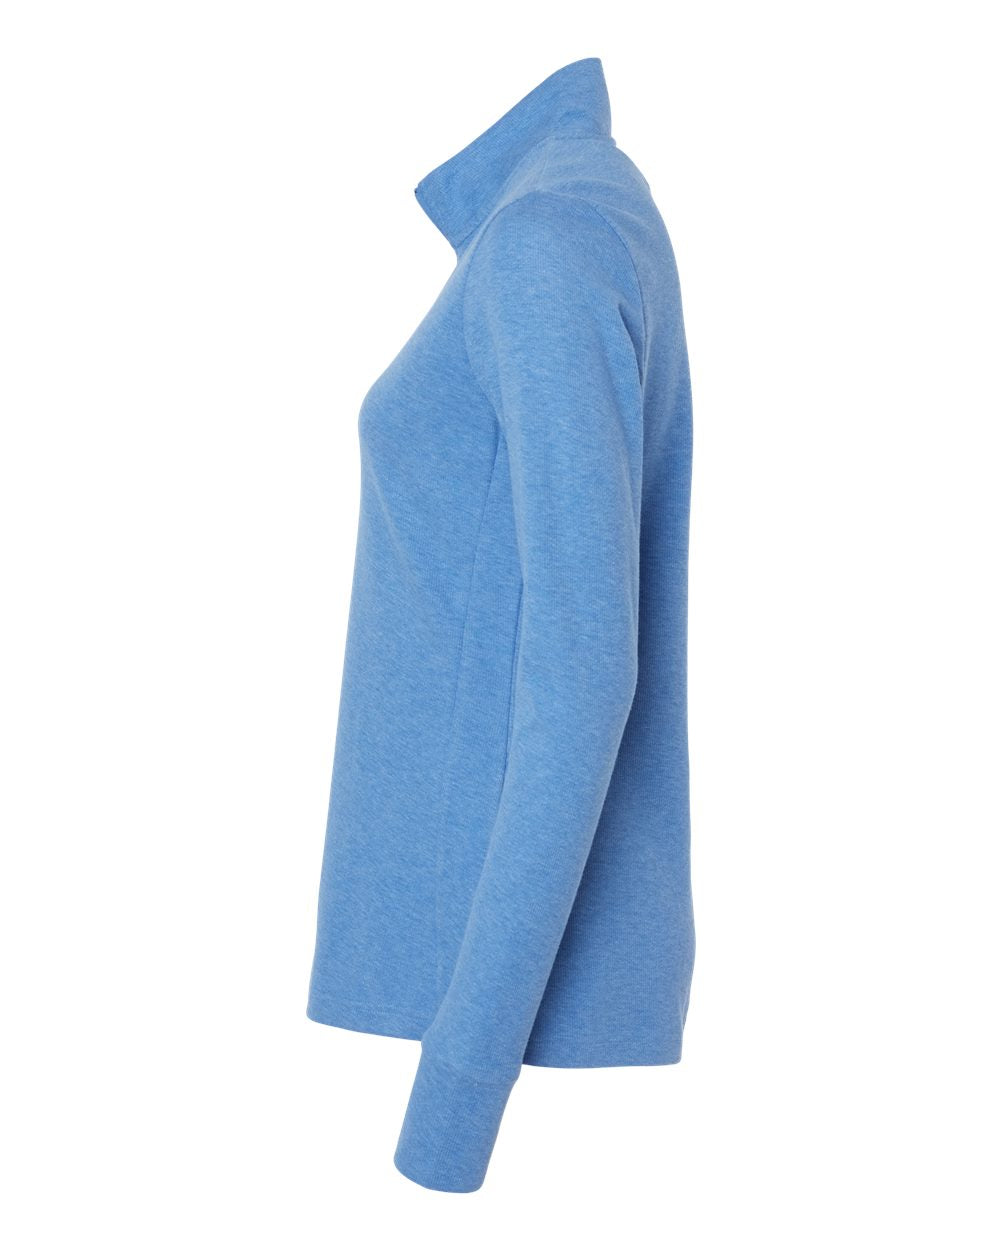 Adidas A555 Women's 3-Stripes Quarter-Zip Sweater #color_Focus Blue Melange